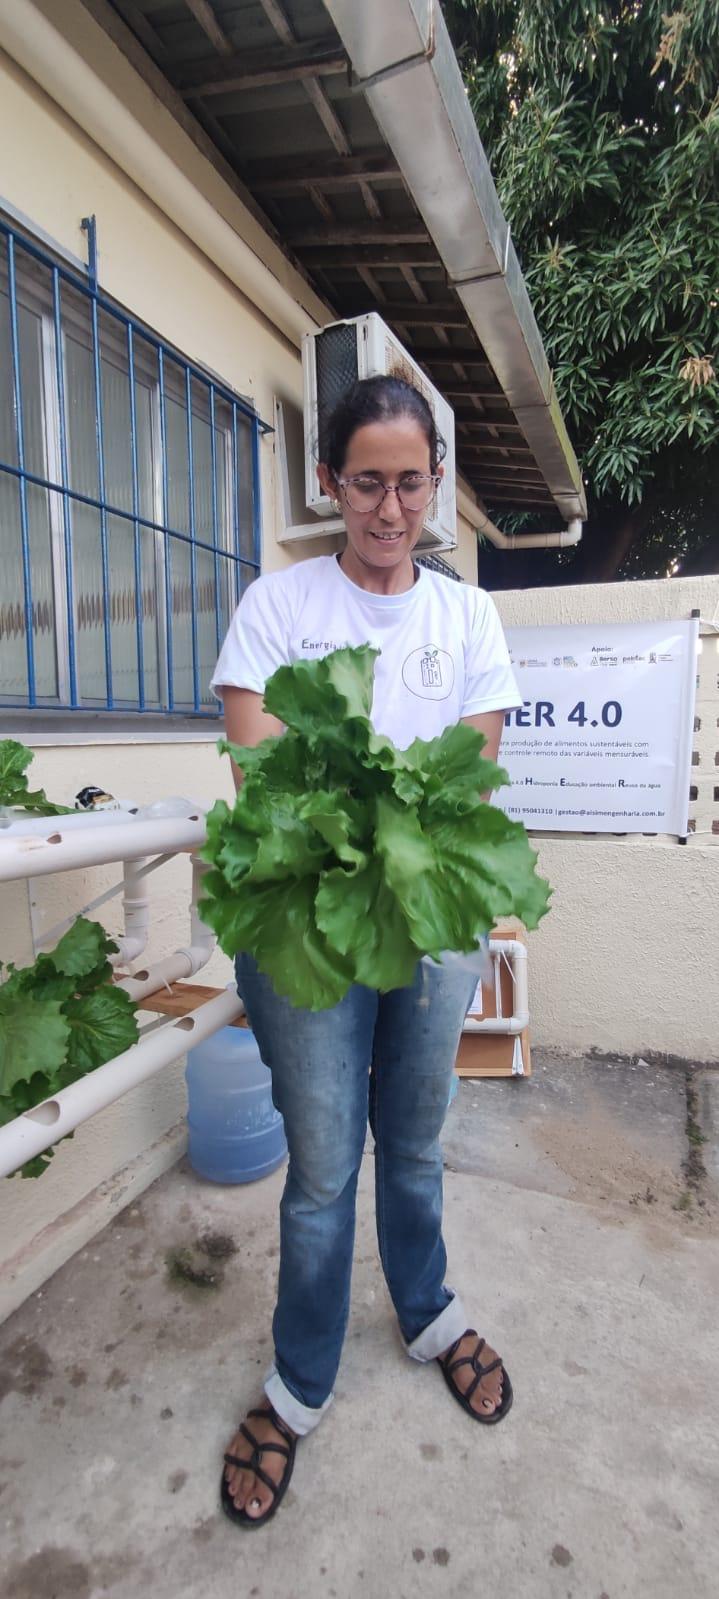 lettuce produced in Brazil